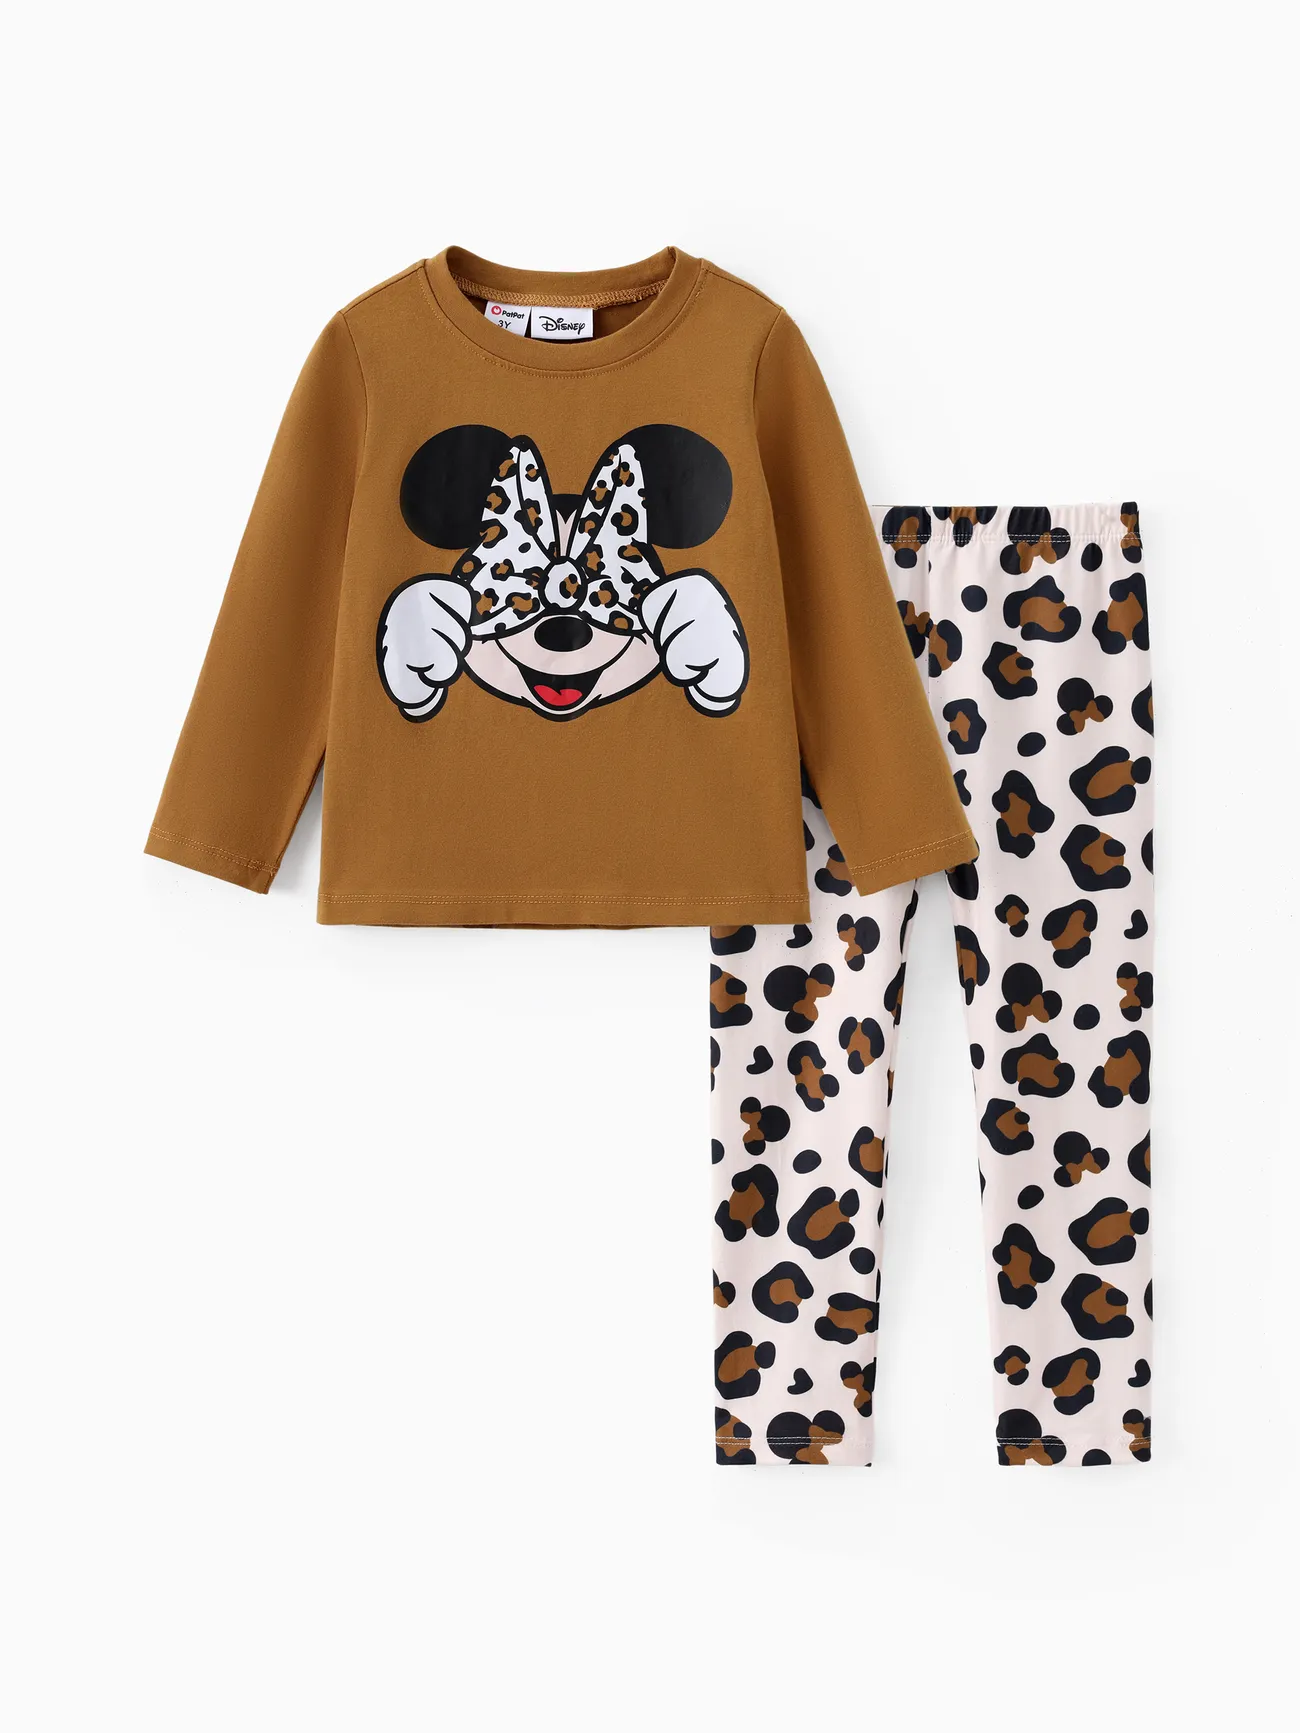 Disney Mickey and Friends 2 Stück Kleinkinder Mädchen Kindlich T-Shirt-Sets braun big image 1